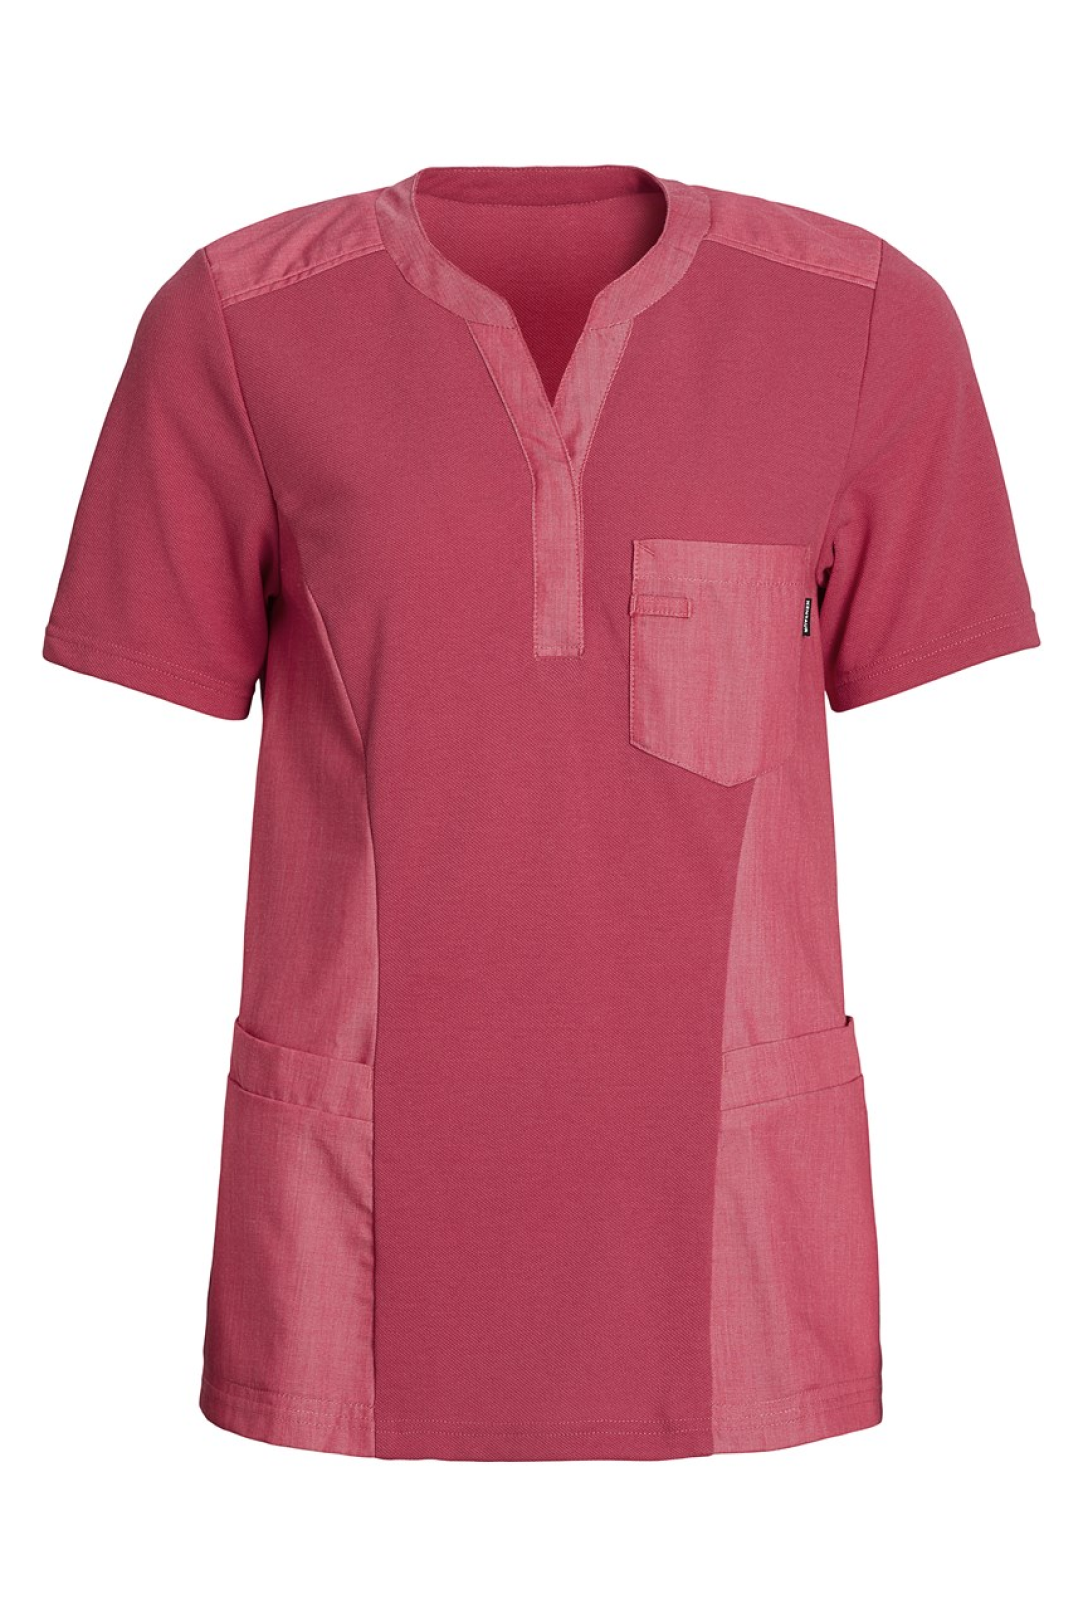 Damen Pique Shirt mit V-Ausschnitt raspberry